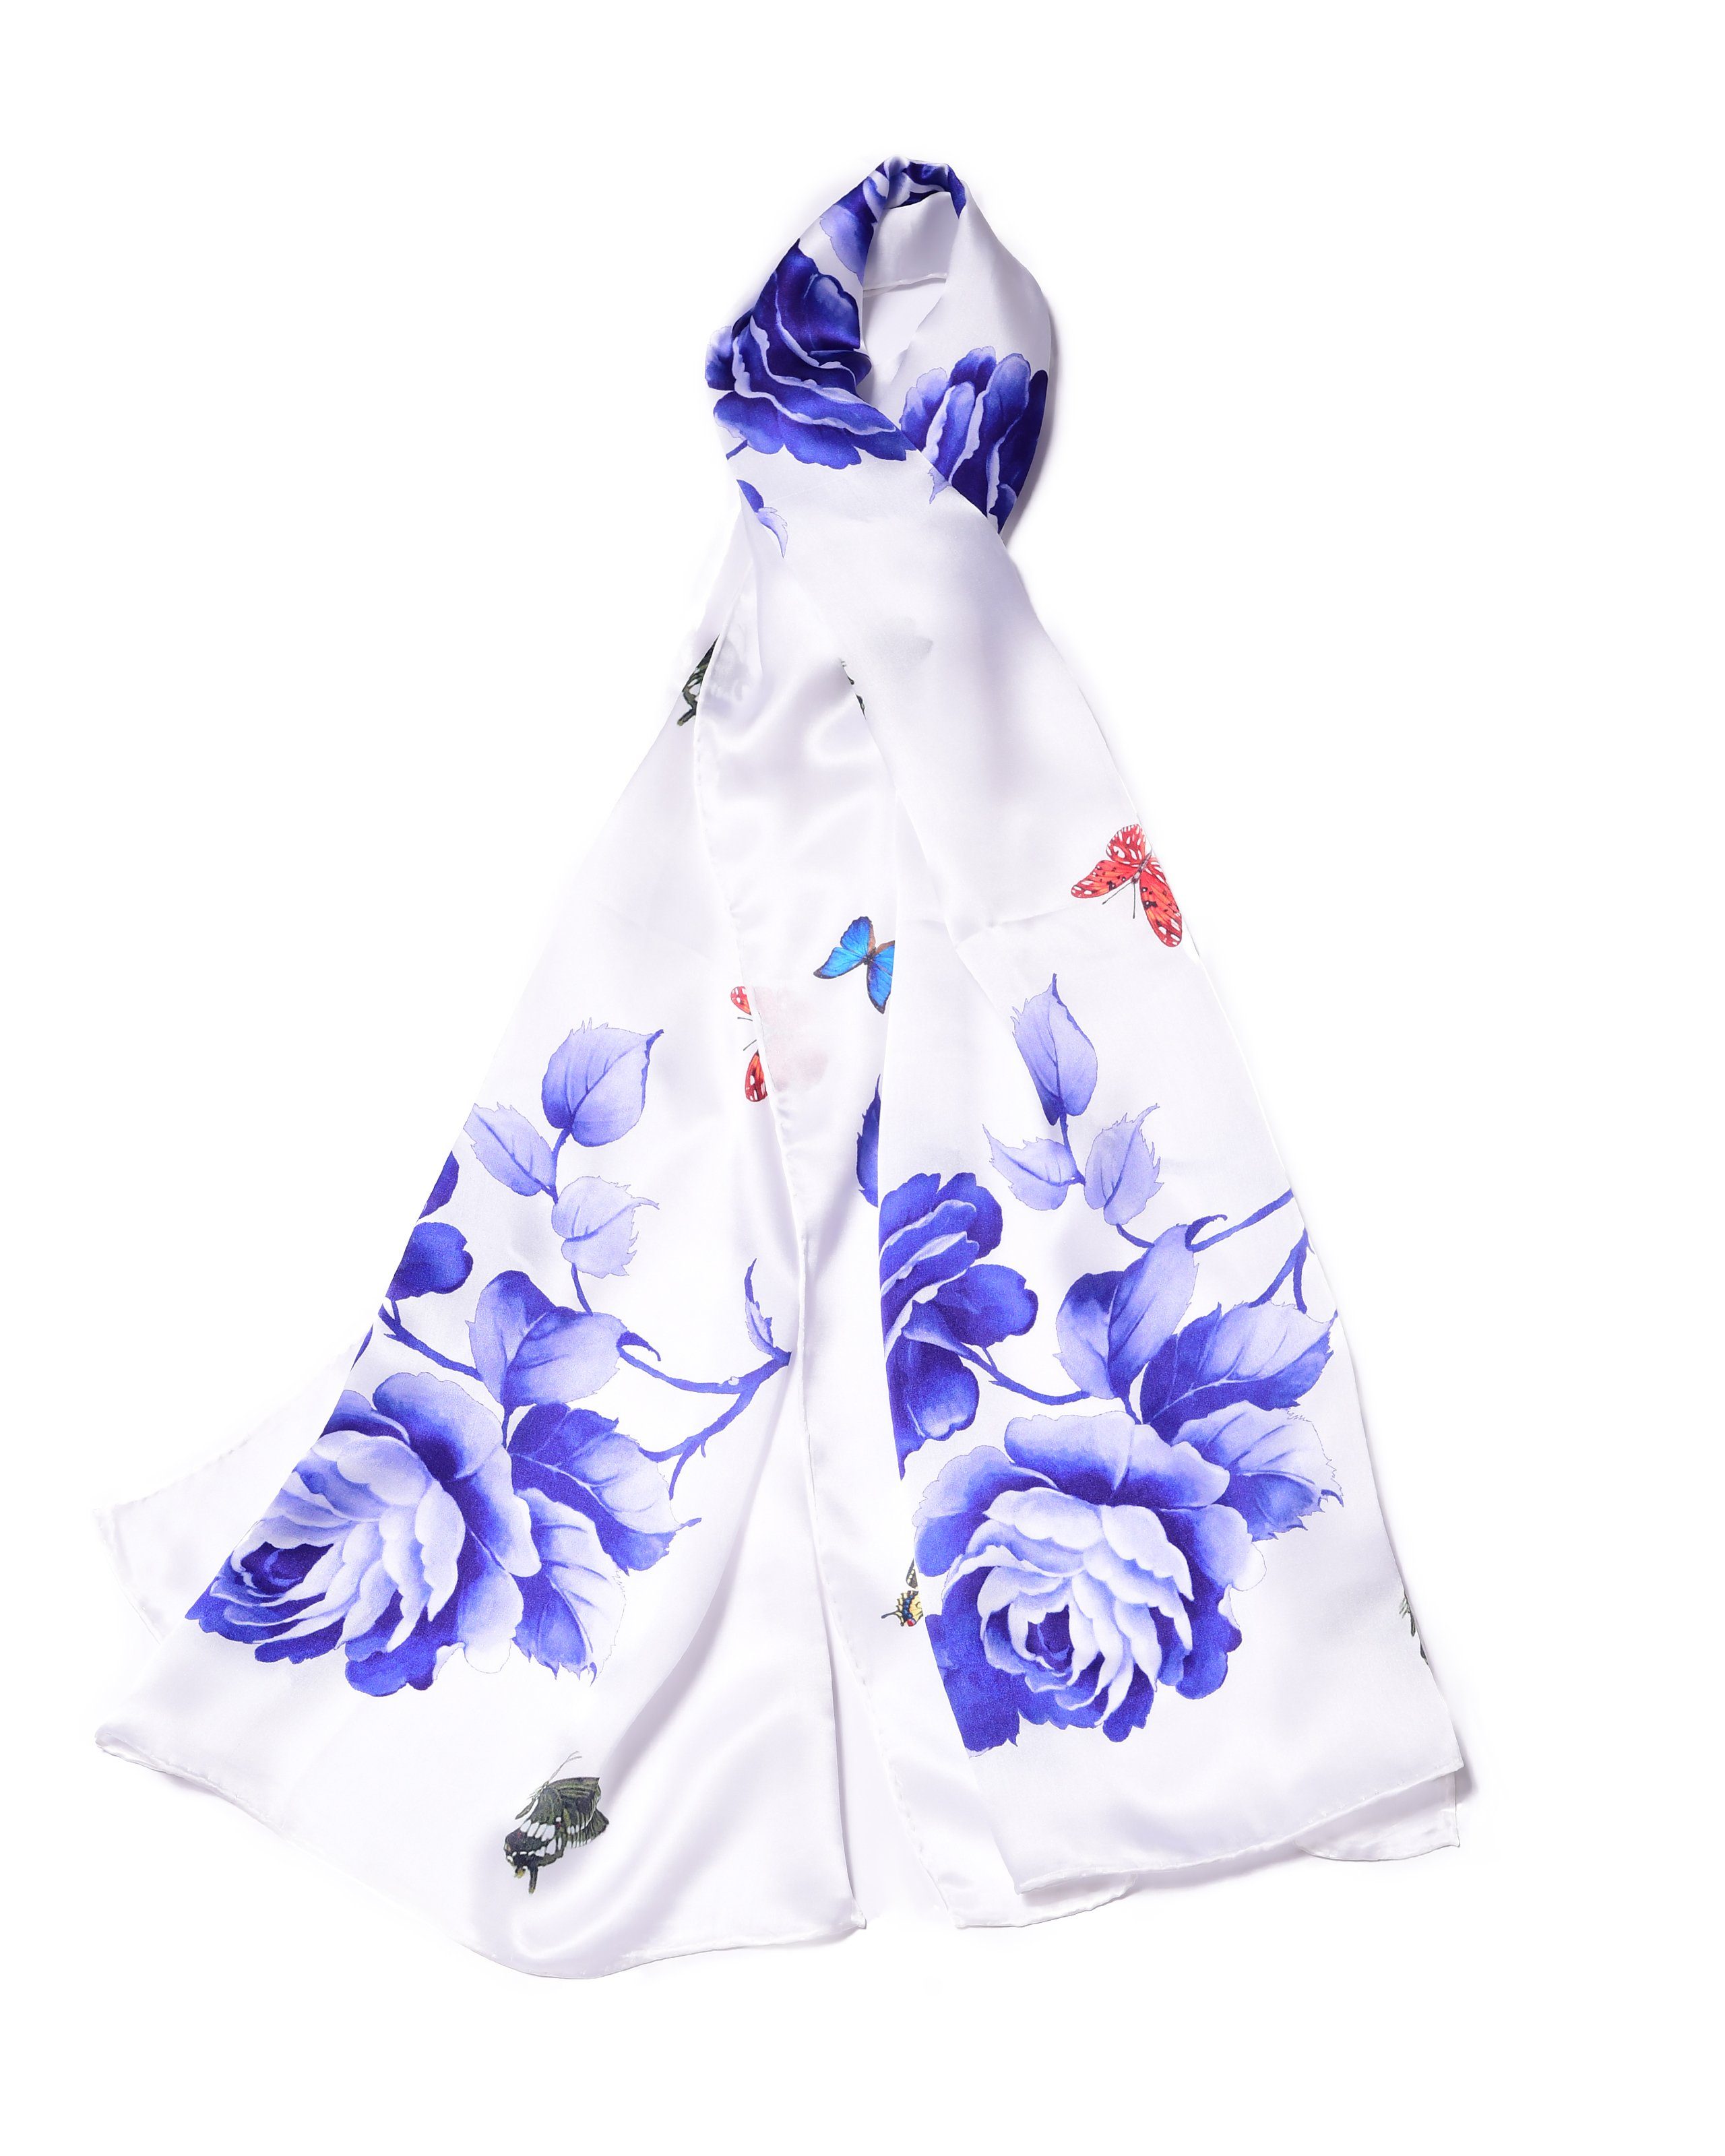 MayTree Seidenschal Rose Blau, 55 x 175 cm, leichter Damen-Schal, alljährig, (Stück), Seidentuch 100% Seide